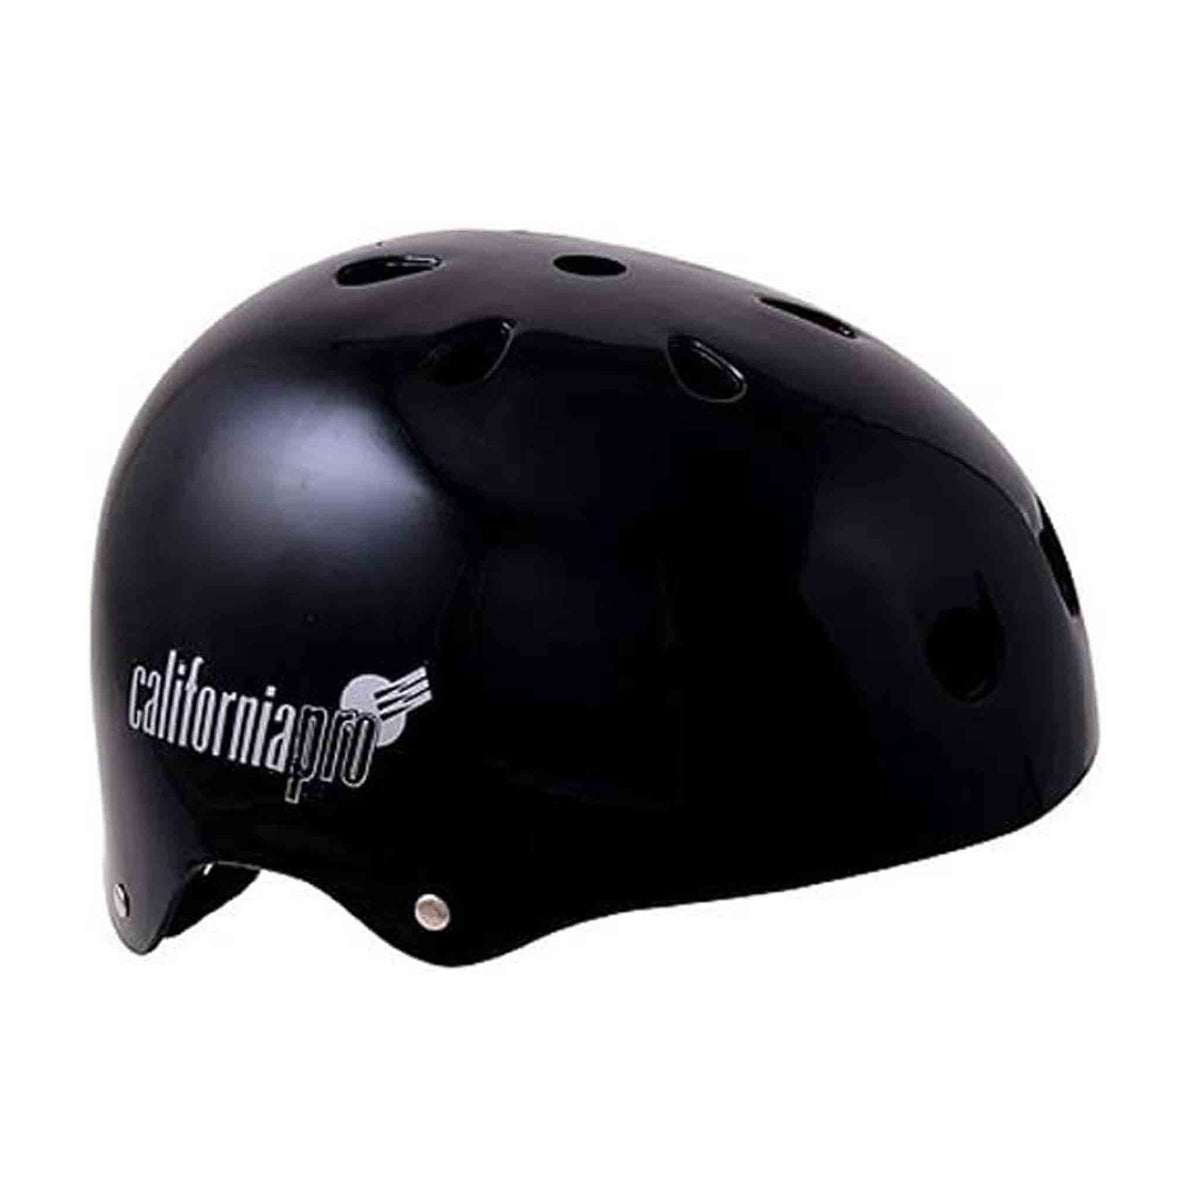 Pro Skate Helmet - JT Skateboard